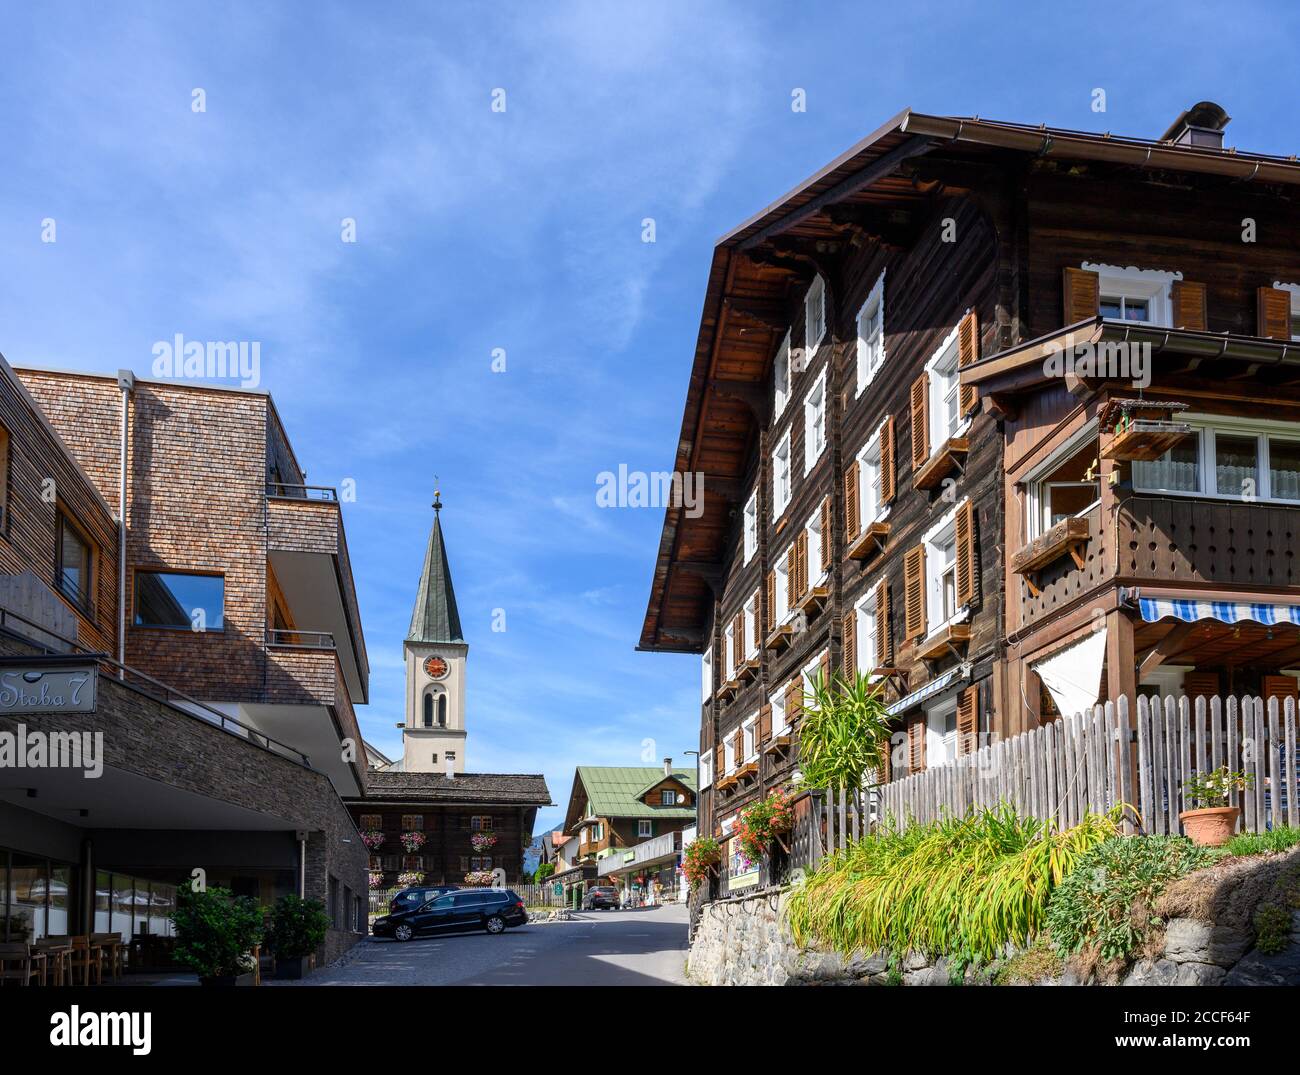 Austria, Montafon, Gaschurn, town view. Stock Photo